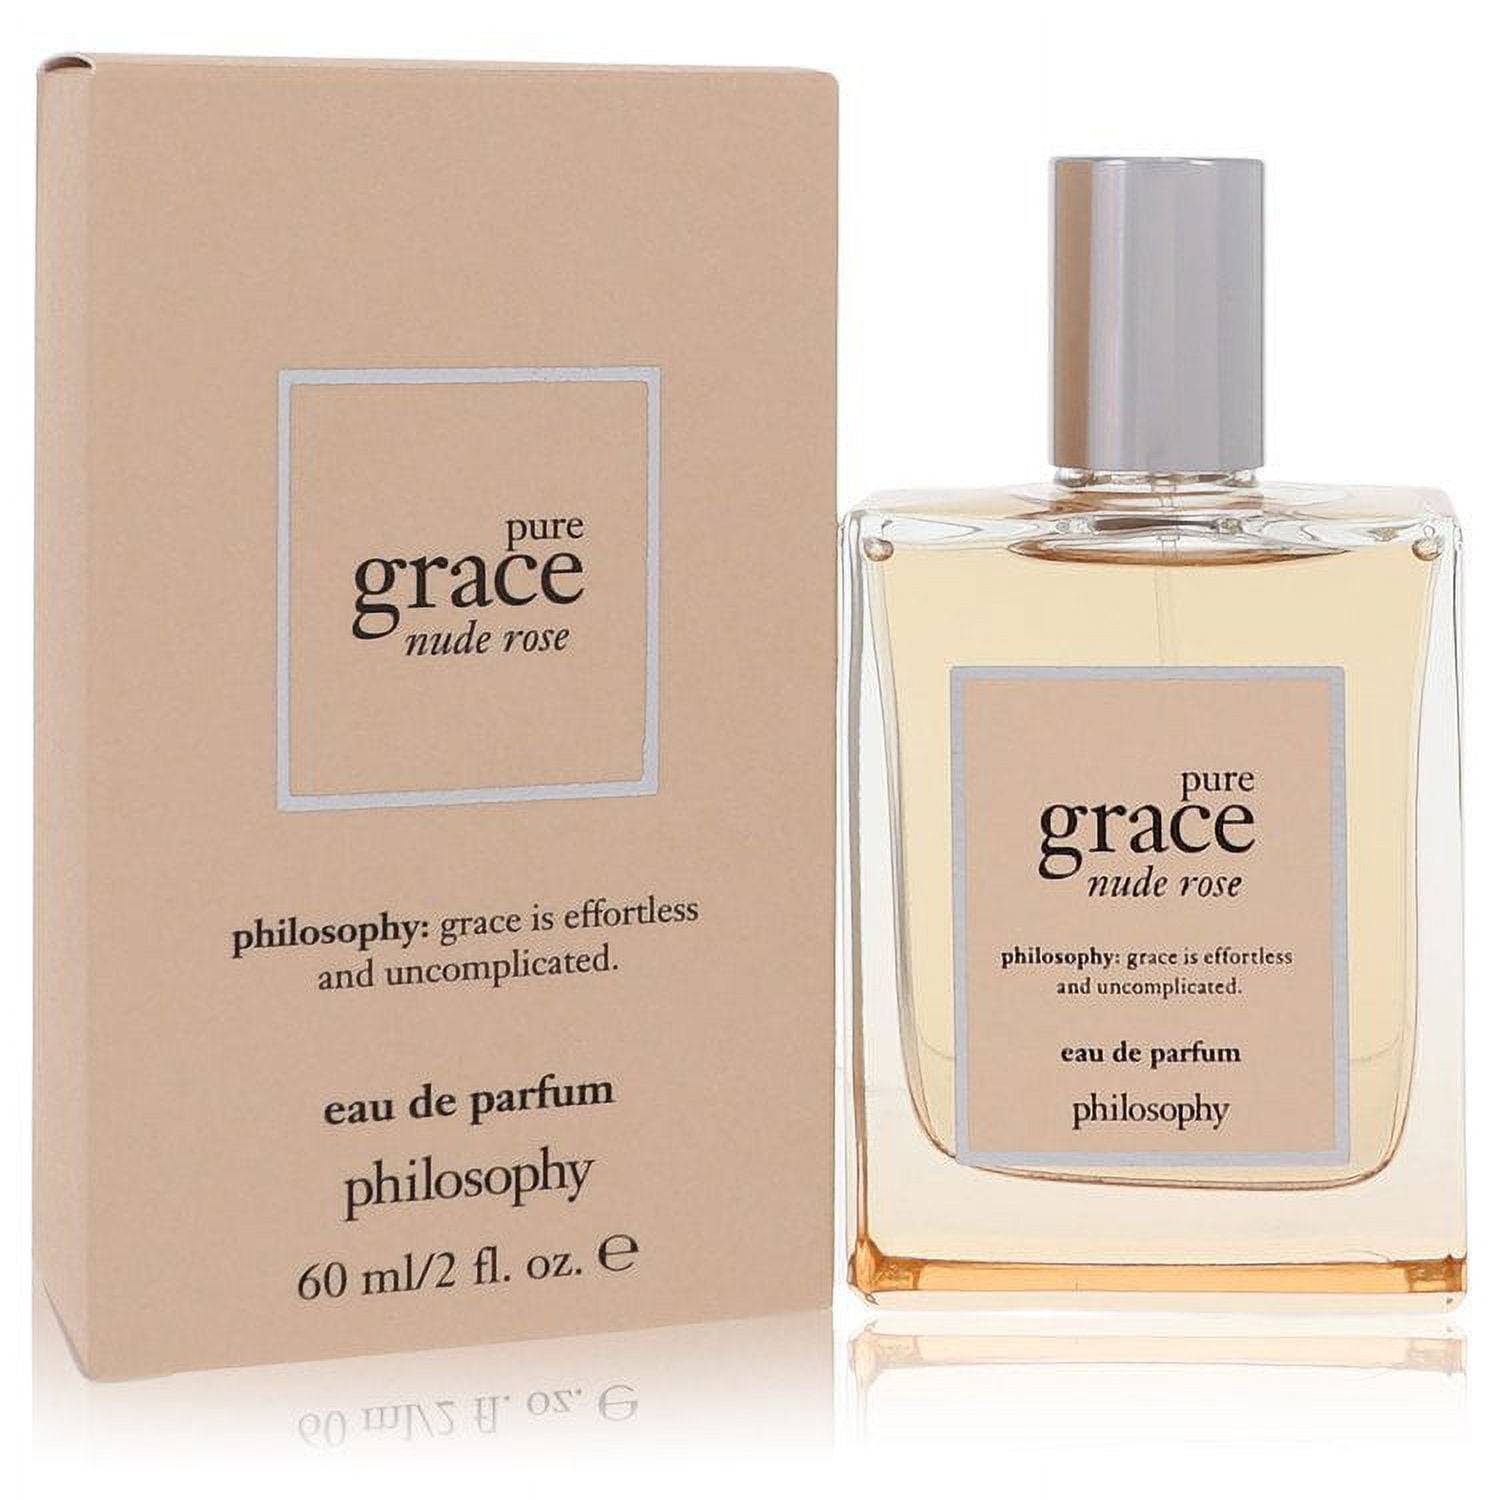 Philosophy Pure Grace Nude Rose Eau de Toilette – Alrossa